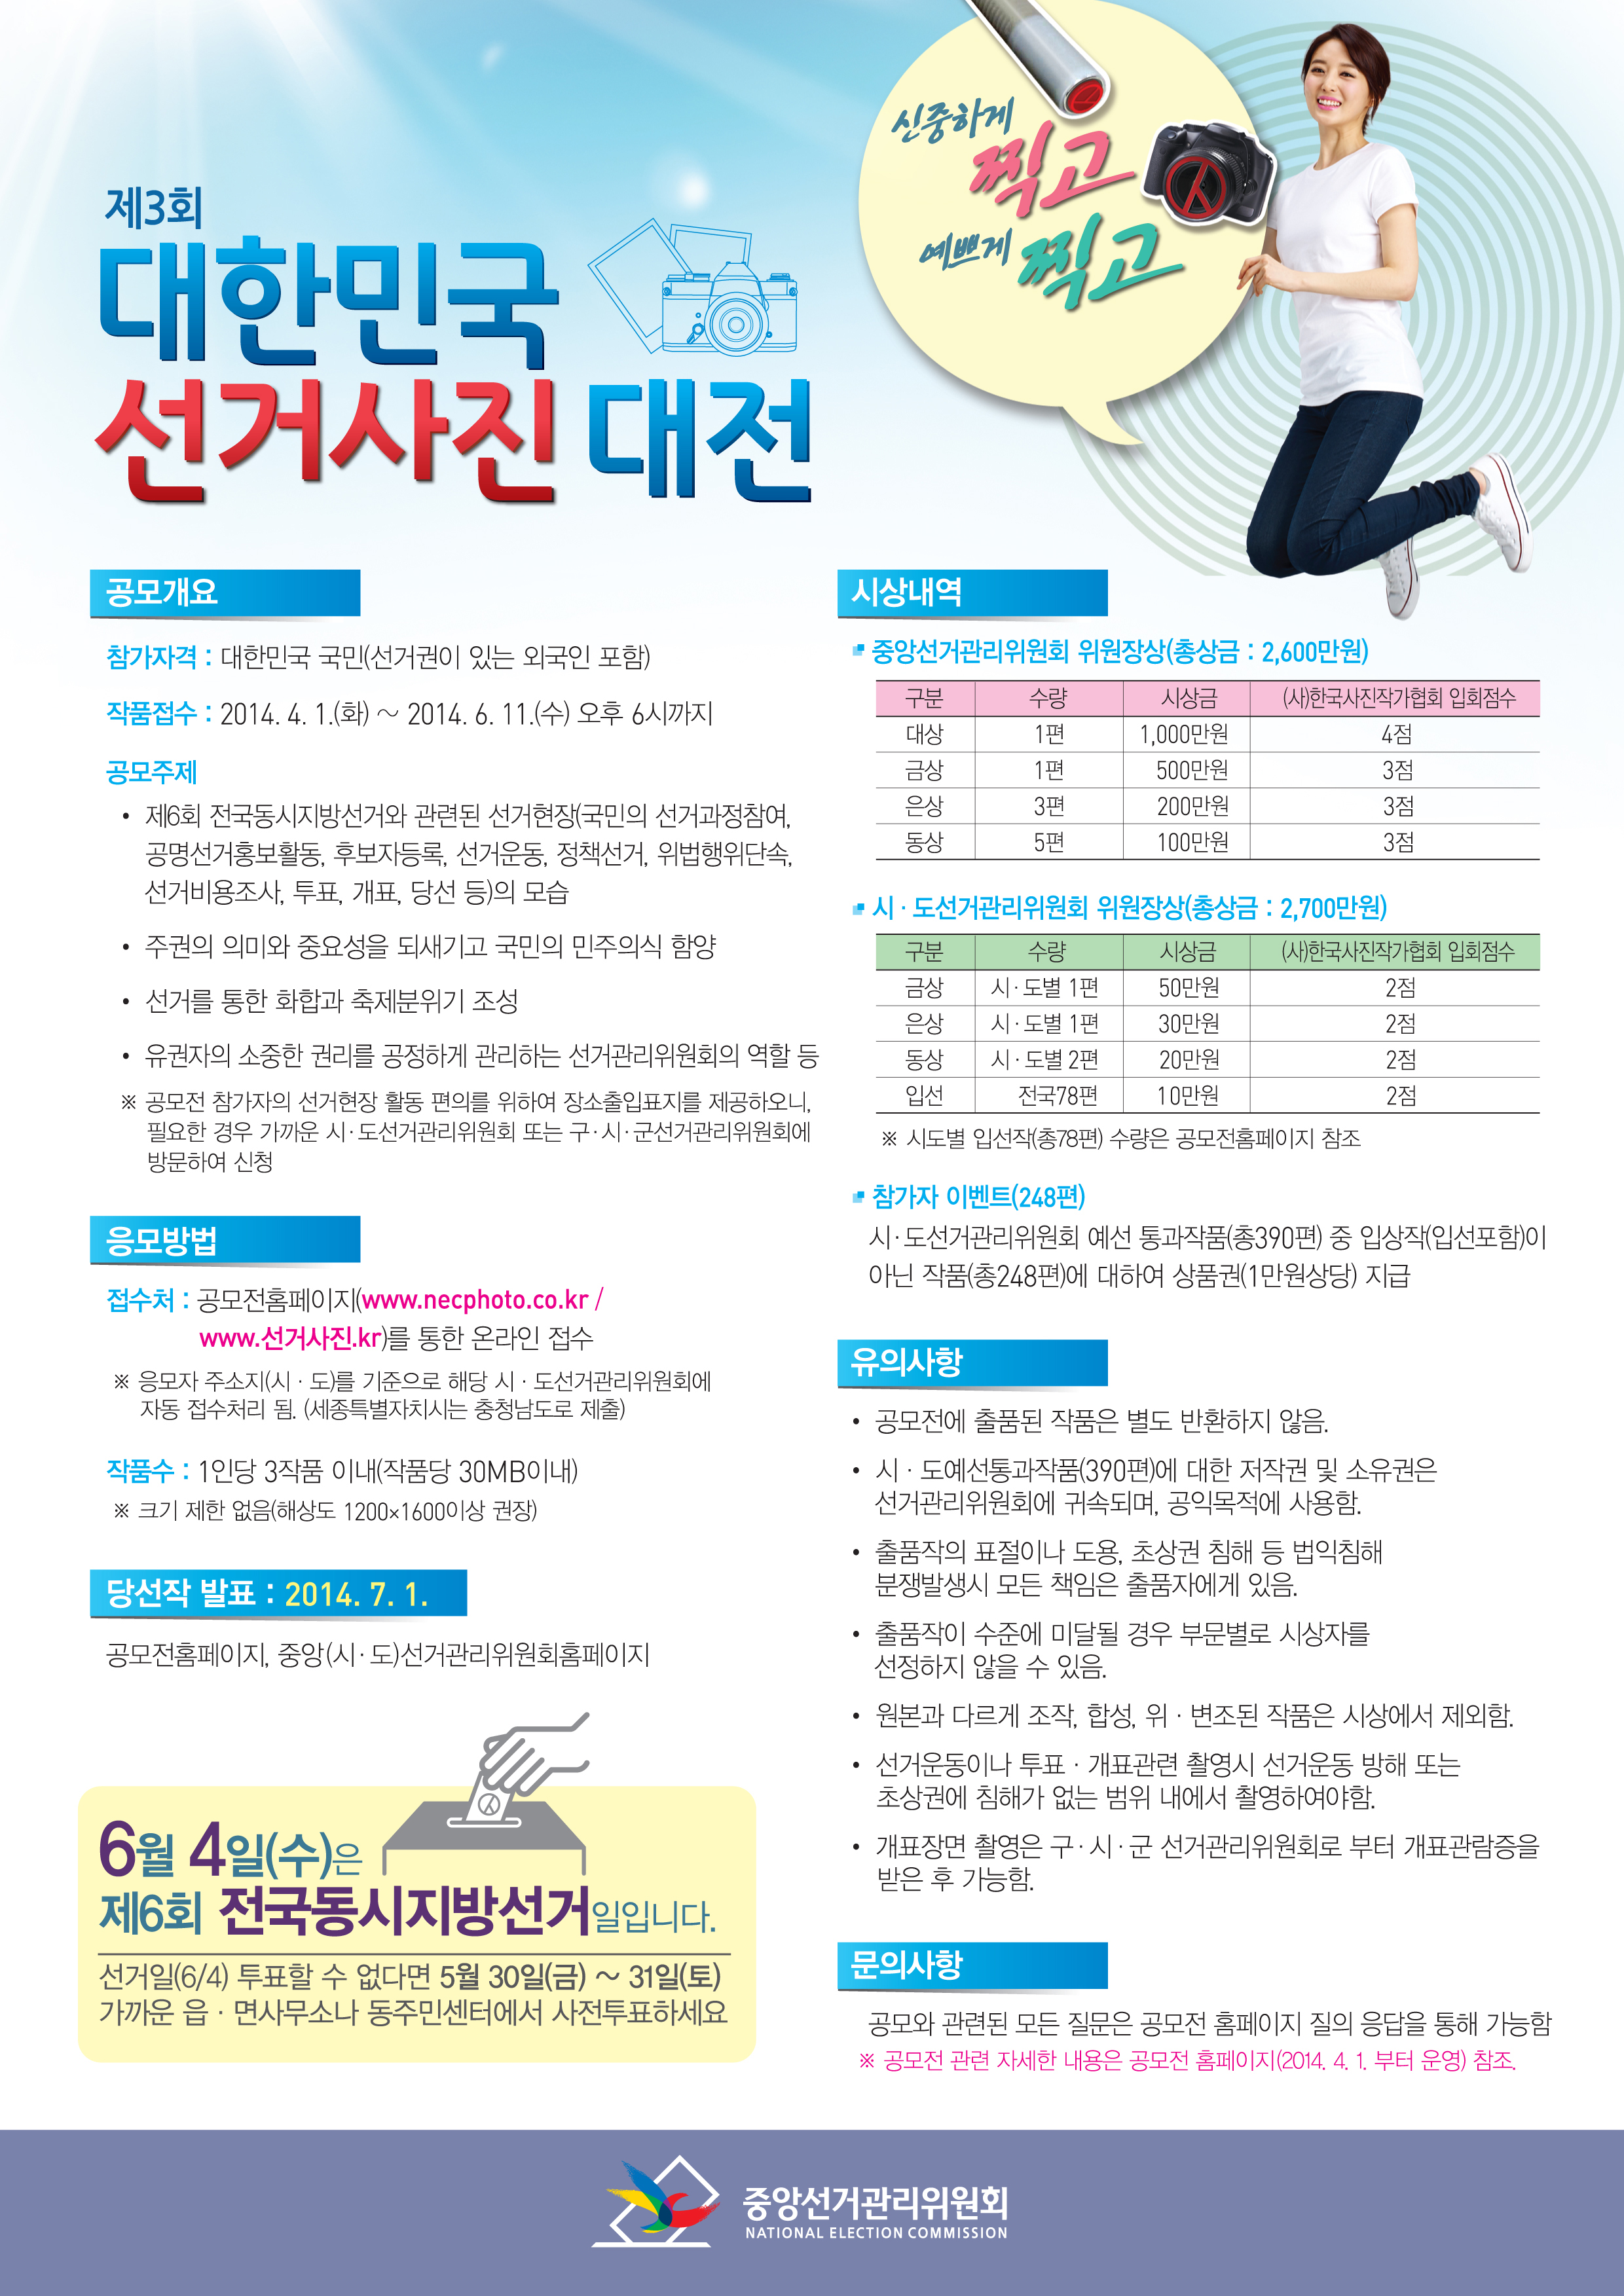 제3회 대한민국 선거사진대전